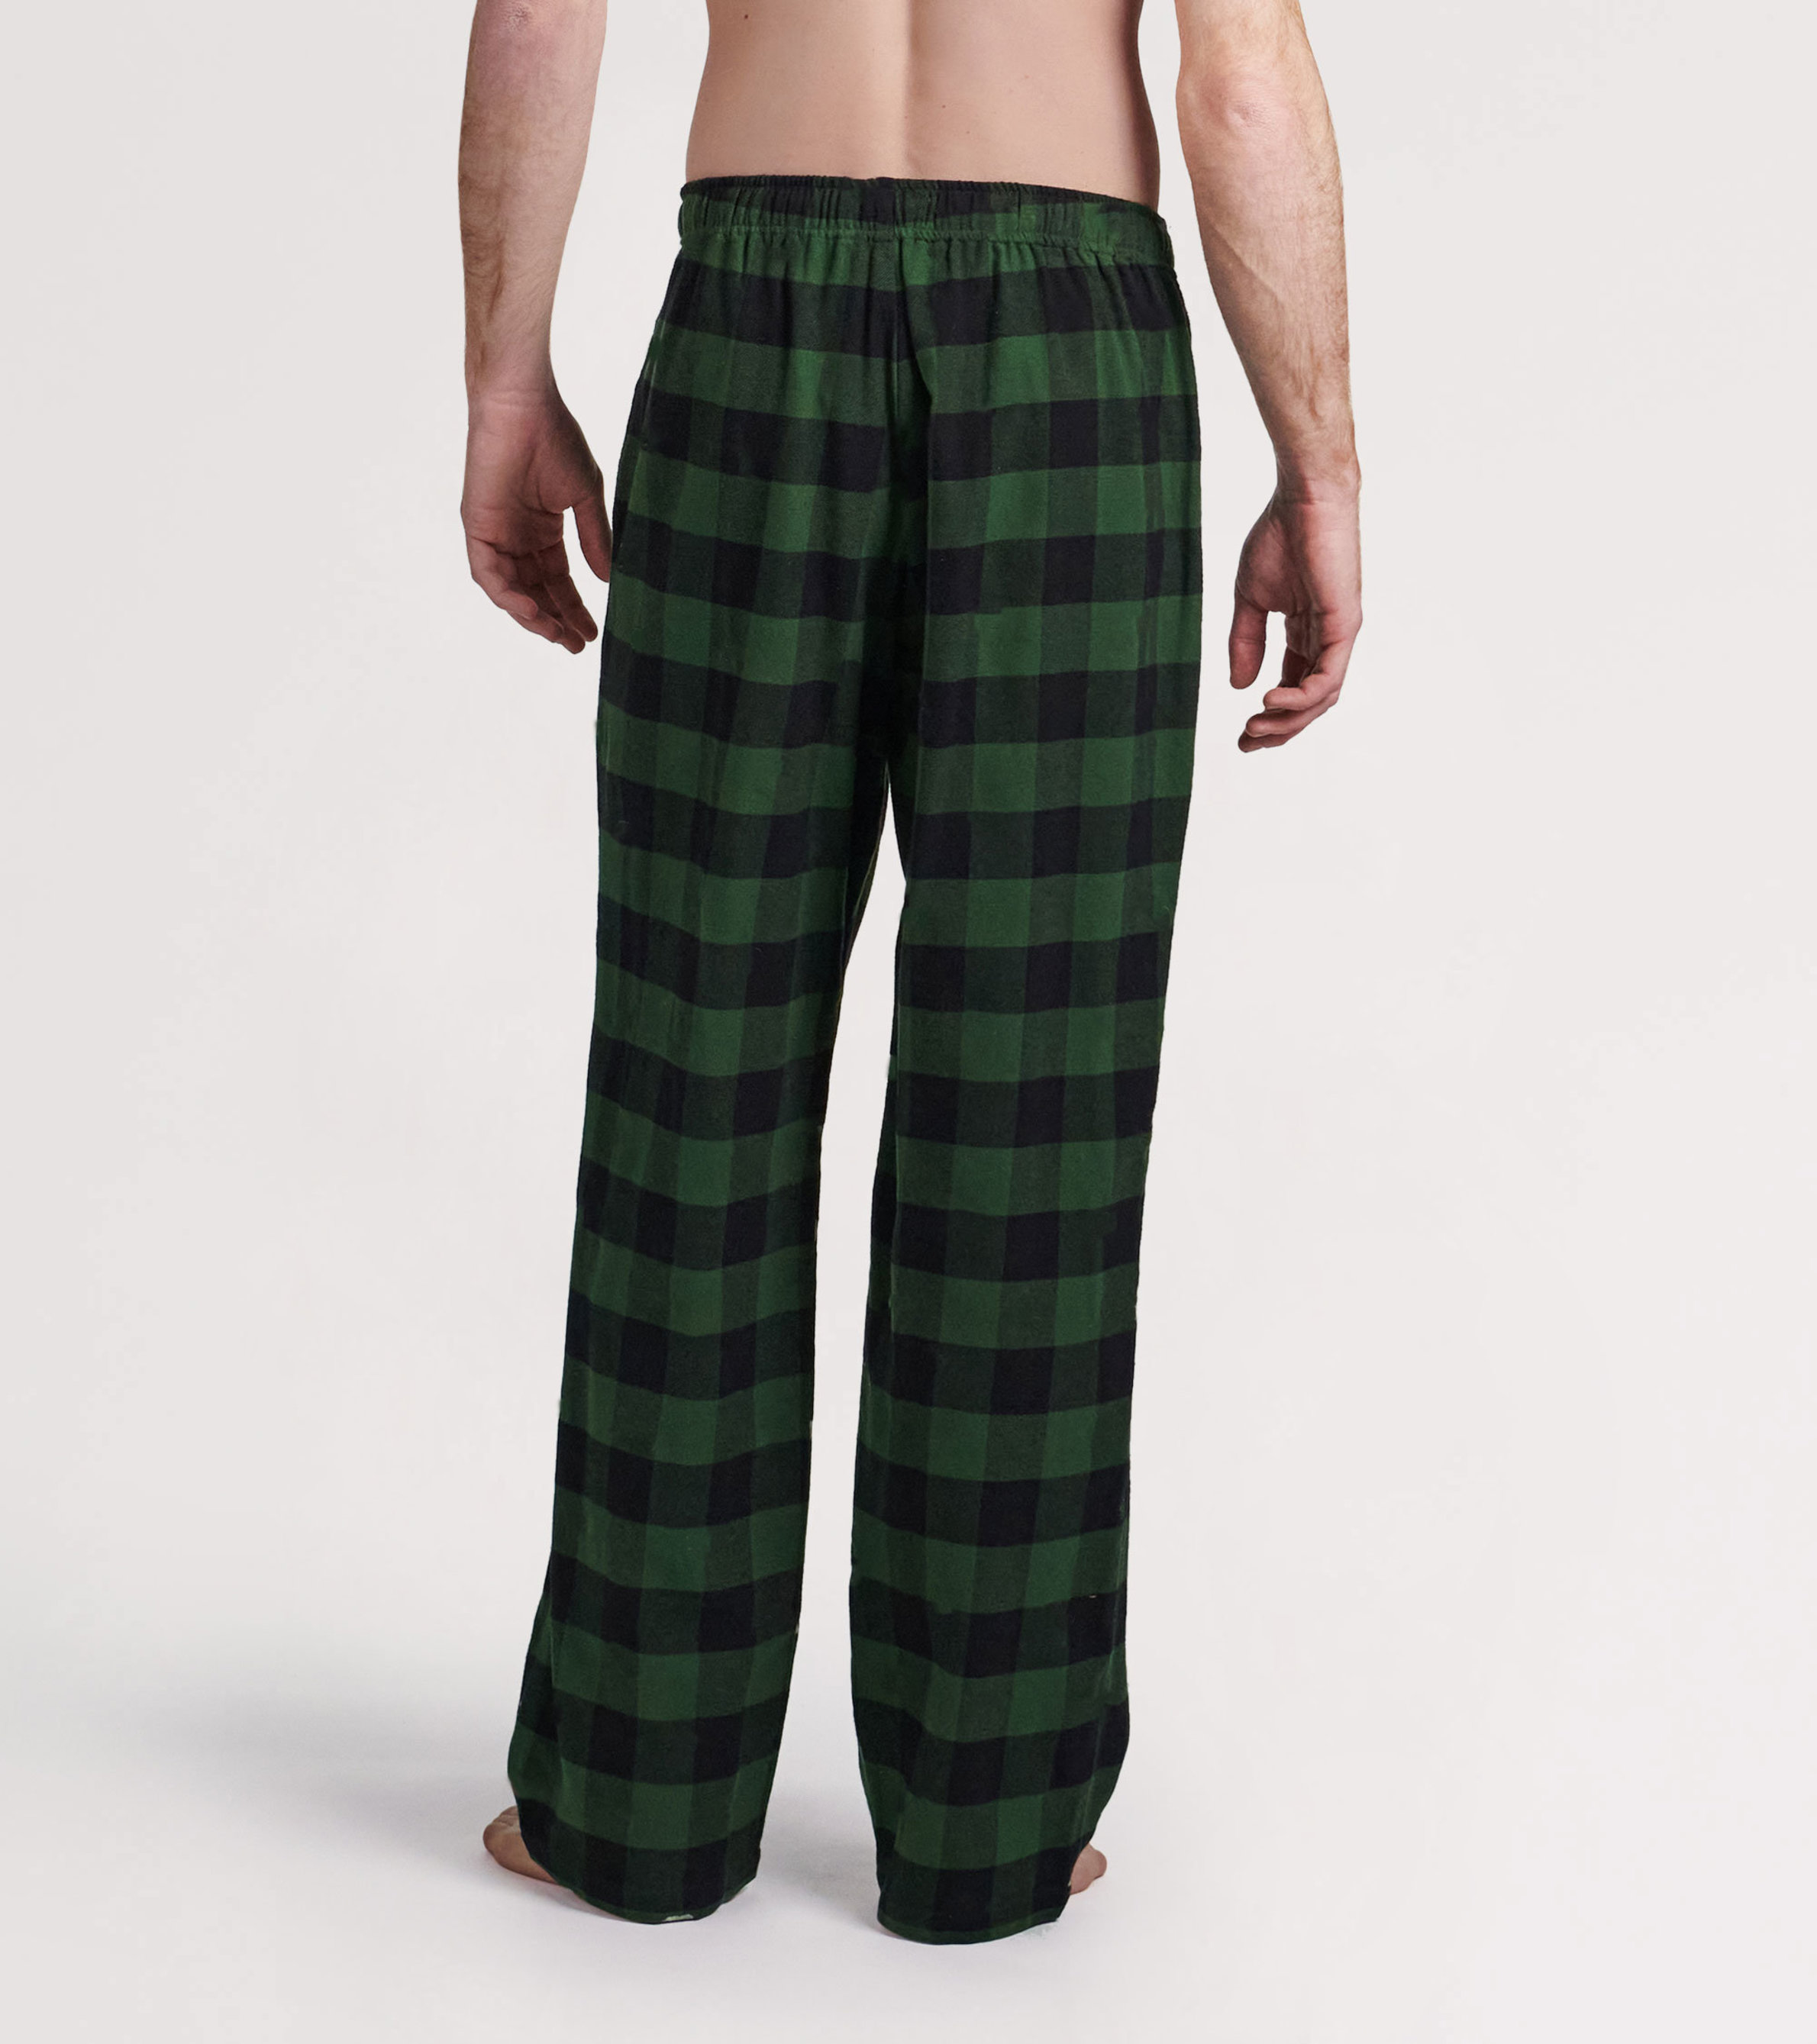 EXP Men's Plaid Pajama Pants, Green